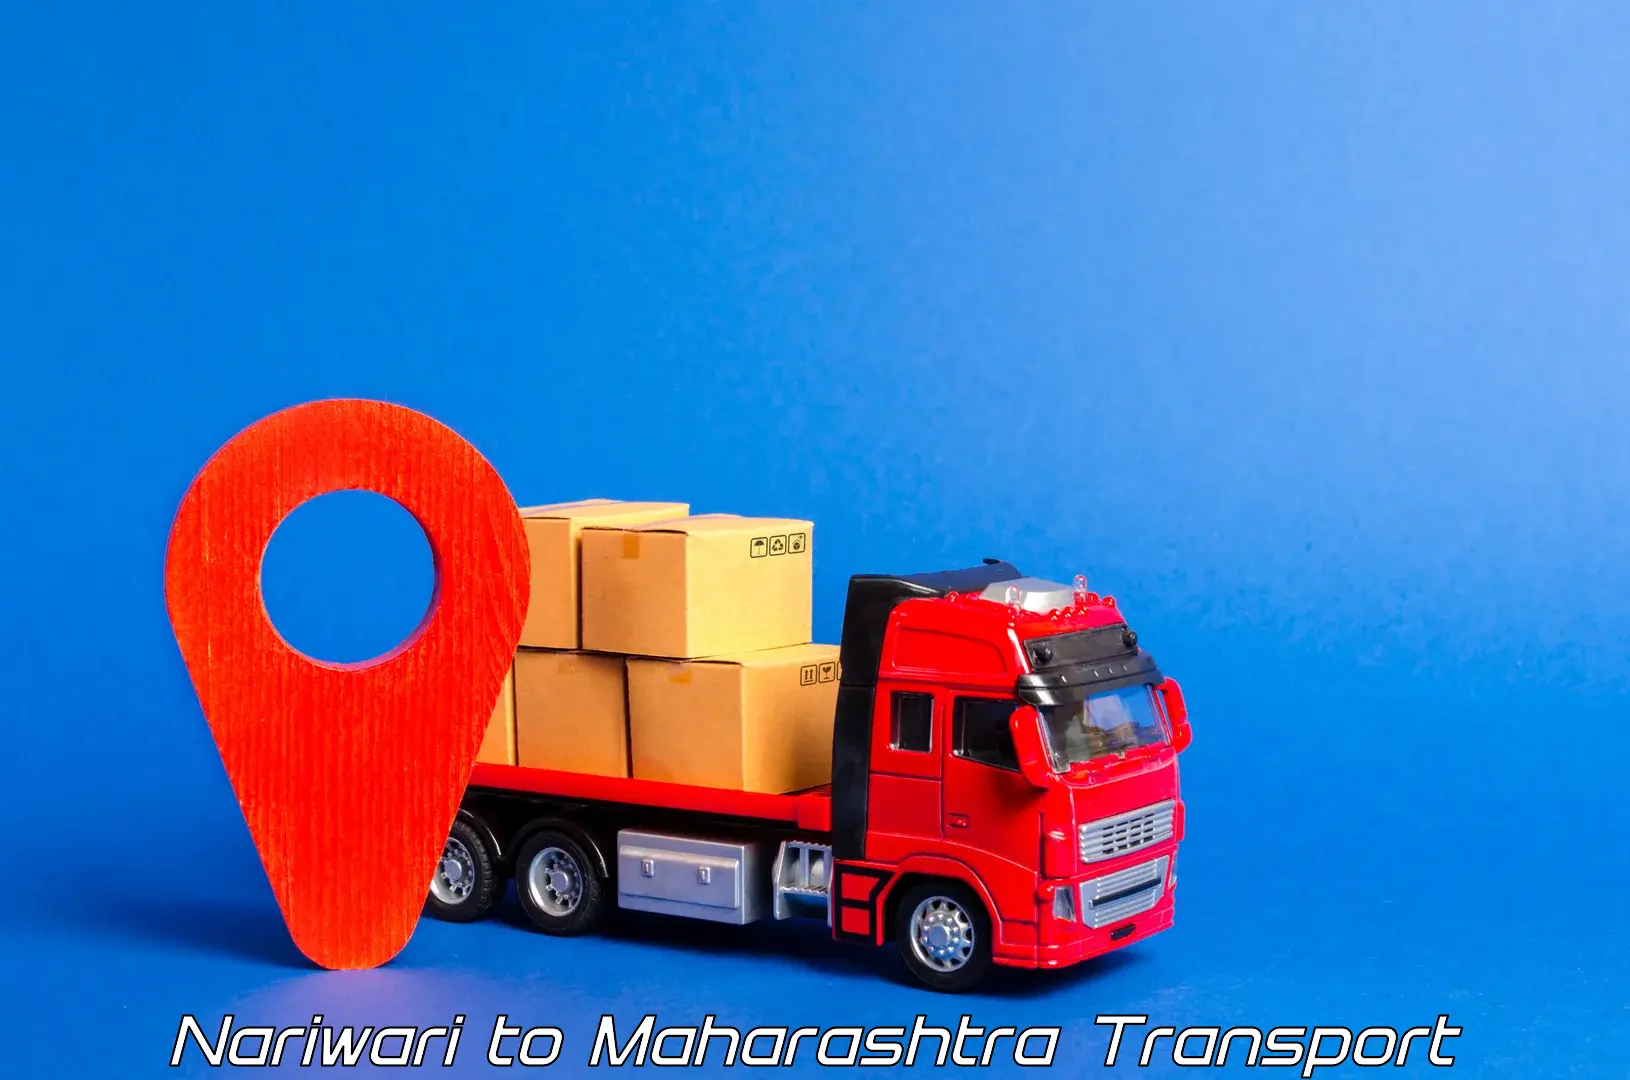 Cargo transport services Nariwari to IIT Mumbai